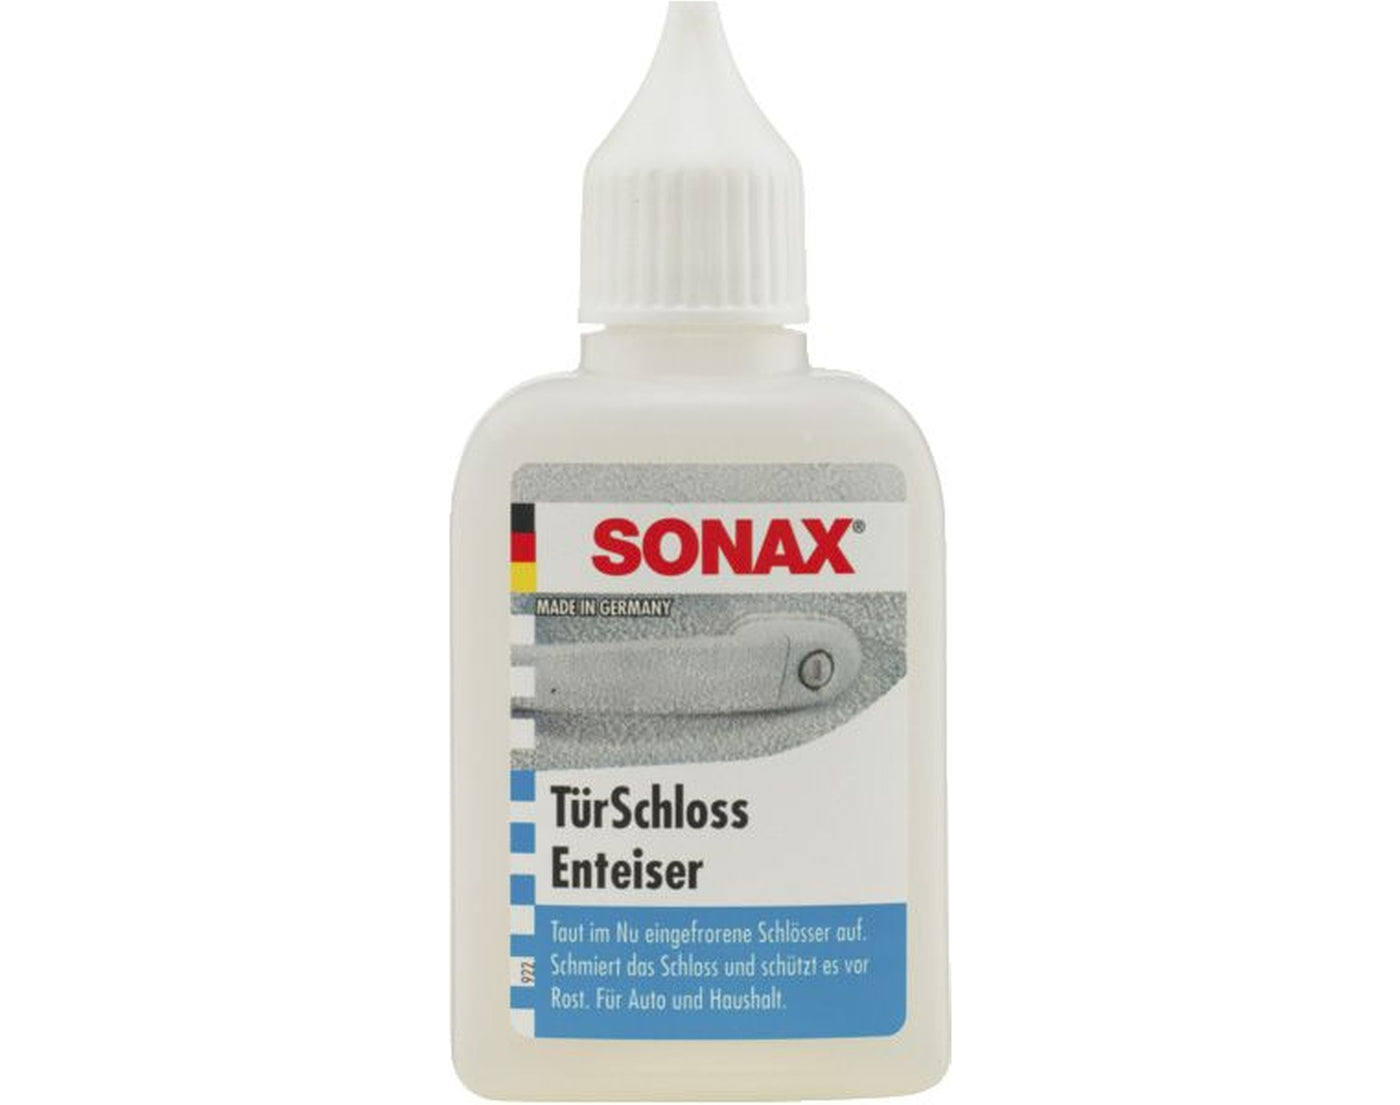 SONAX - Türschlossenteiser 50 ml - Garage/Velos-Motos Allemann